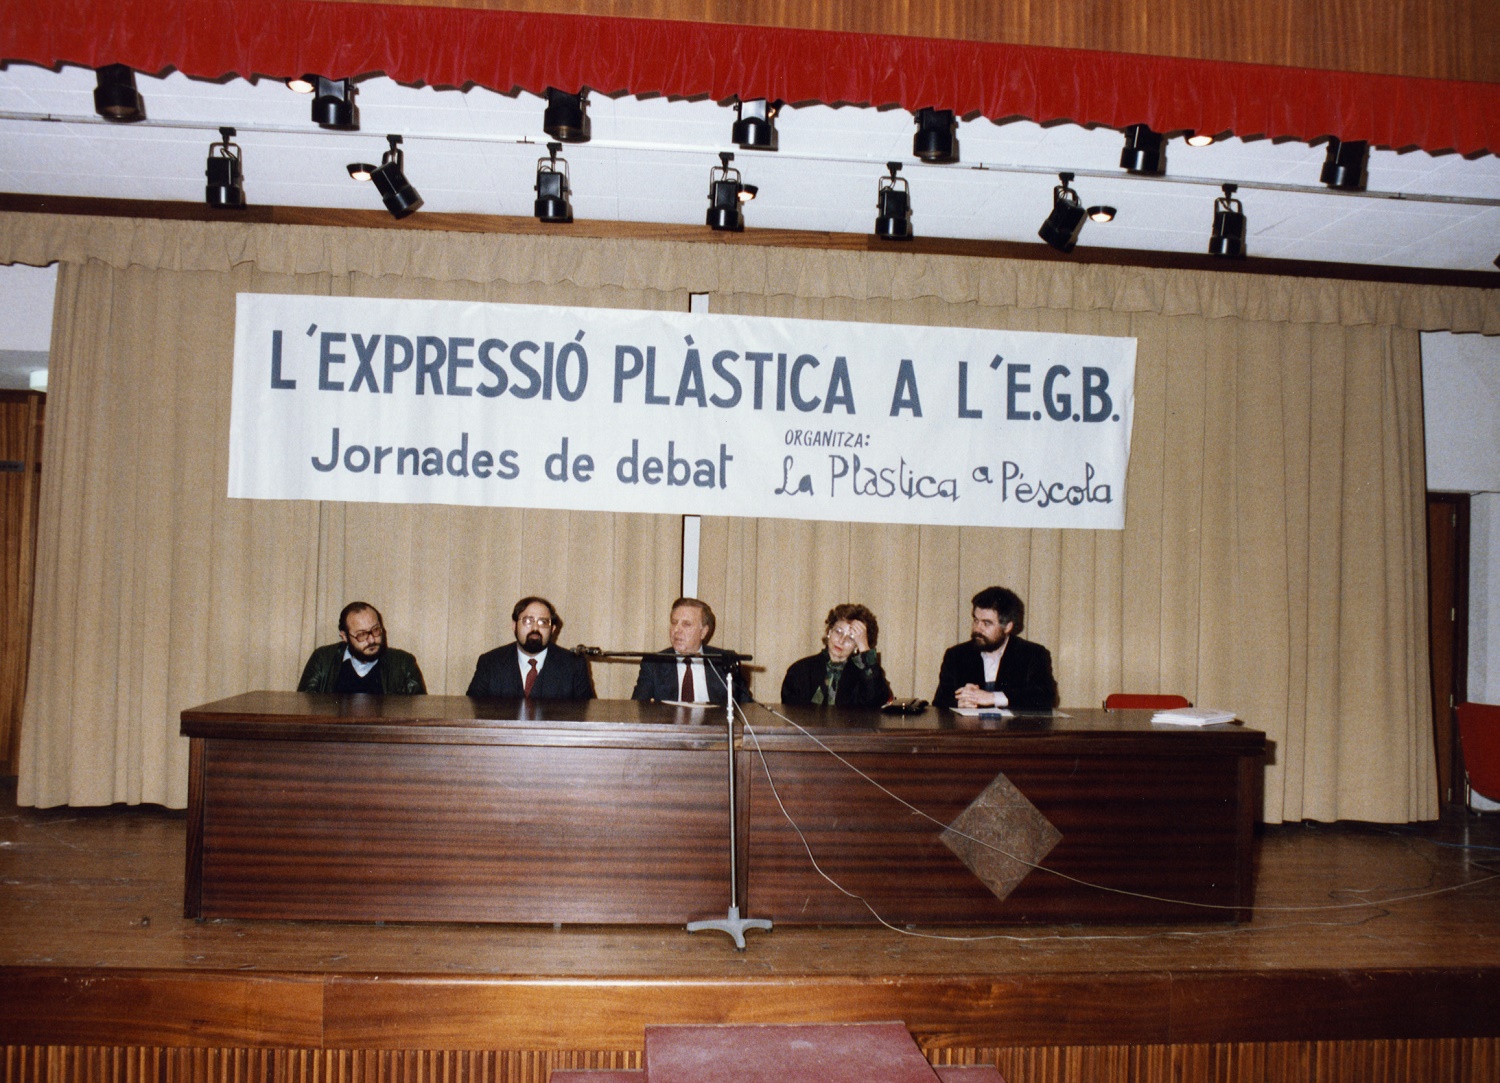 Tarragona. Jornades expressió plàstica a l'EGB